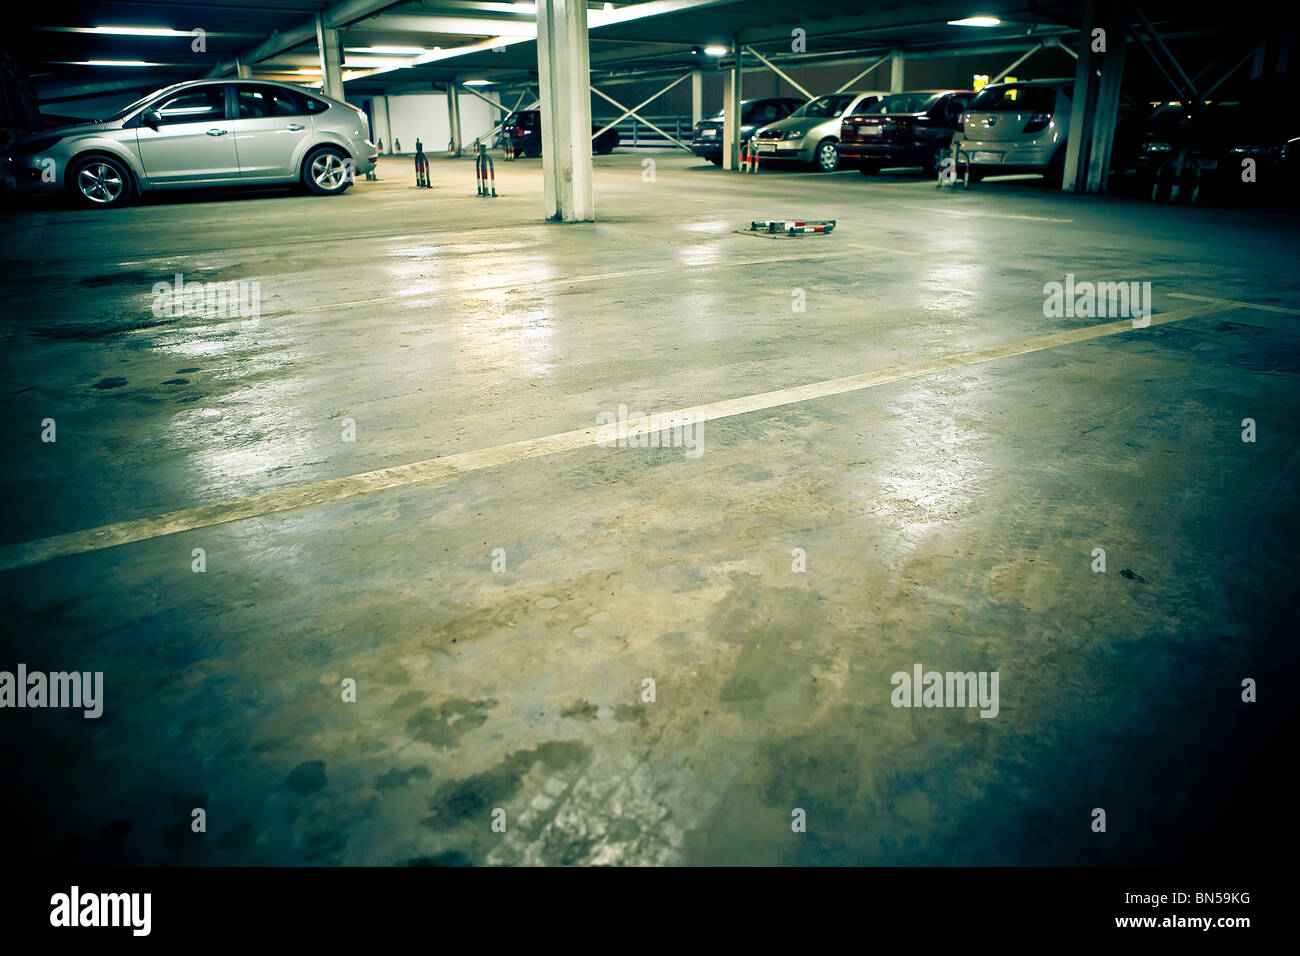 Parking garage - underground interior Stock Photo